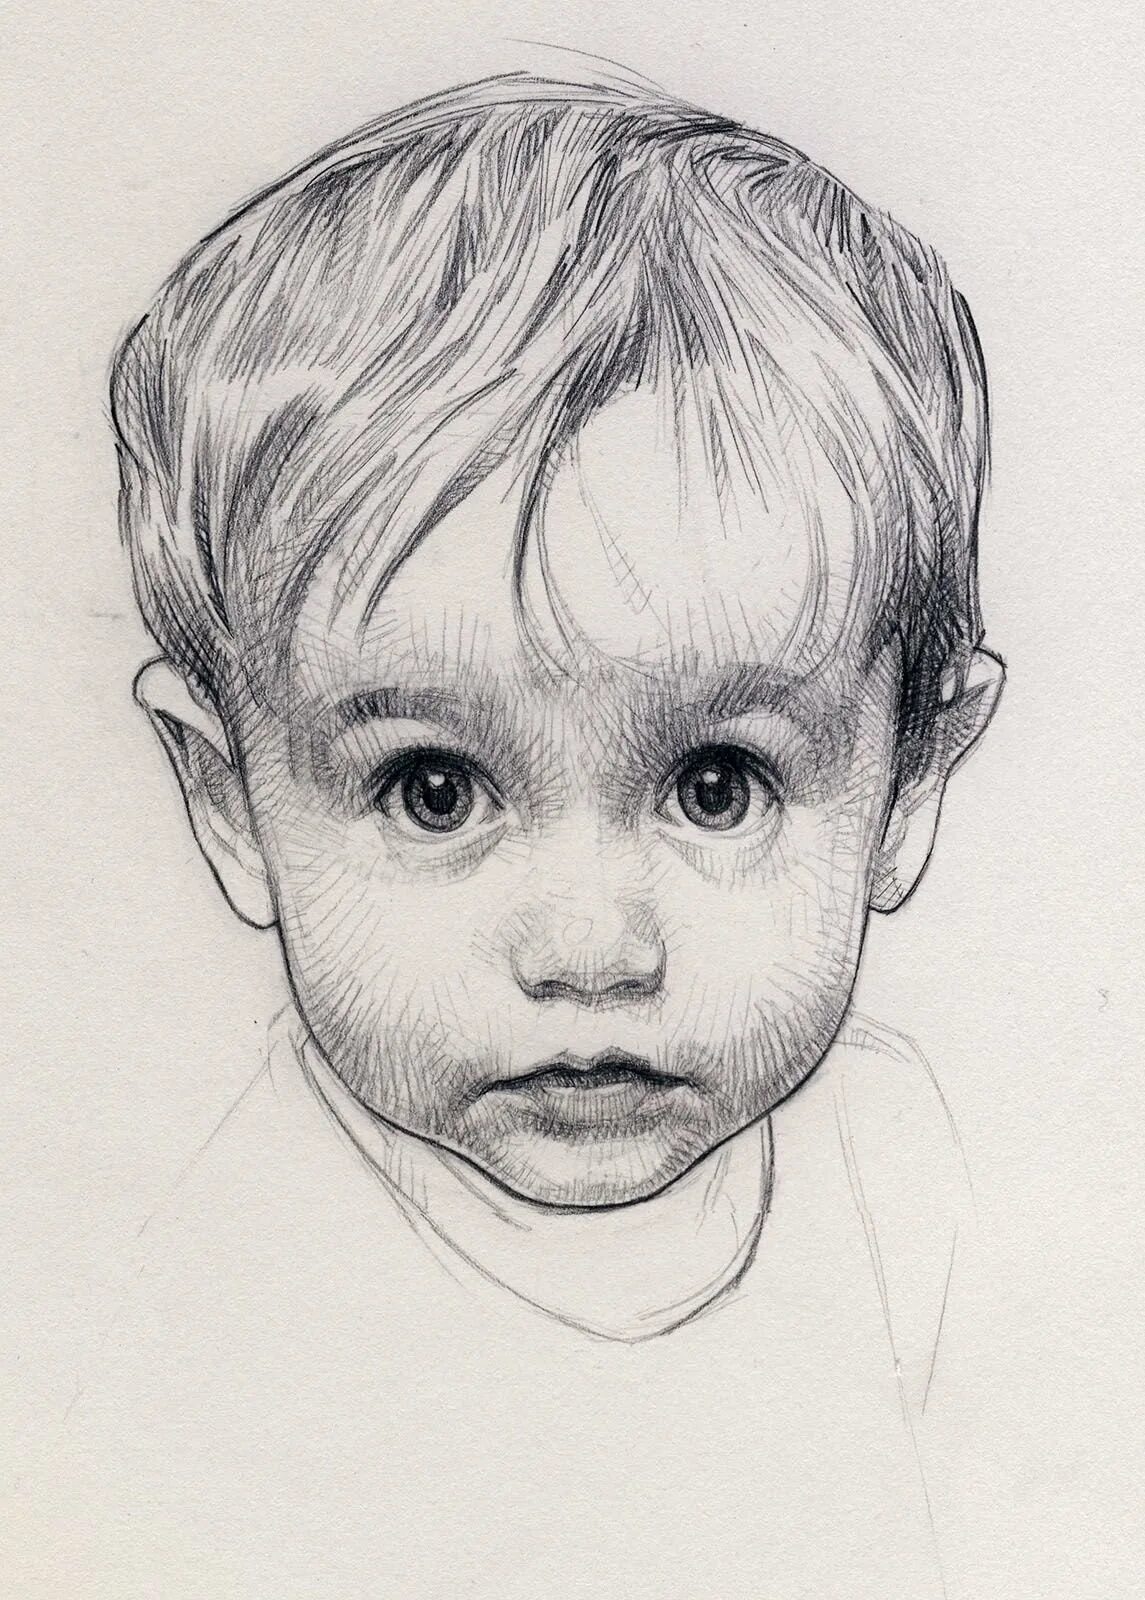 Ребенок карандашом. David Malan. Портрет ребенка карандашом. Графический портрет мальчика. Портрет мальчика карандашом.